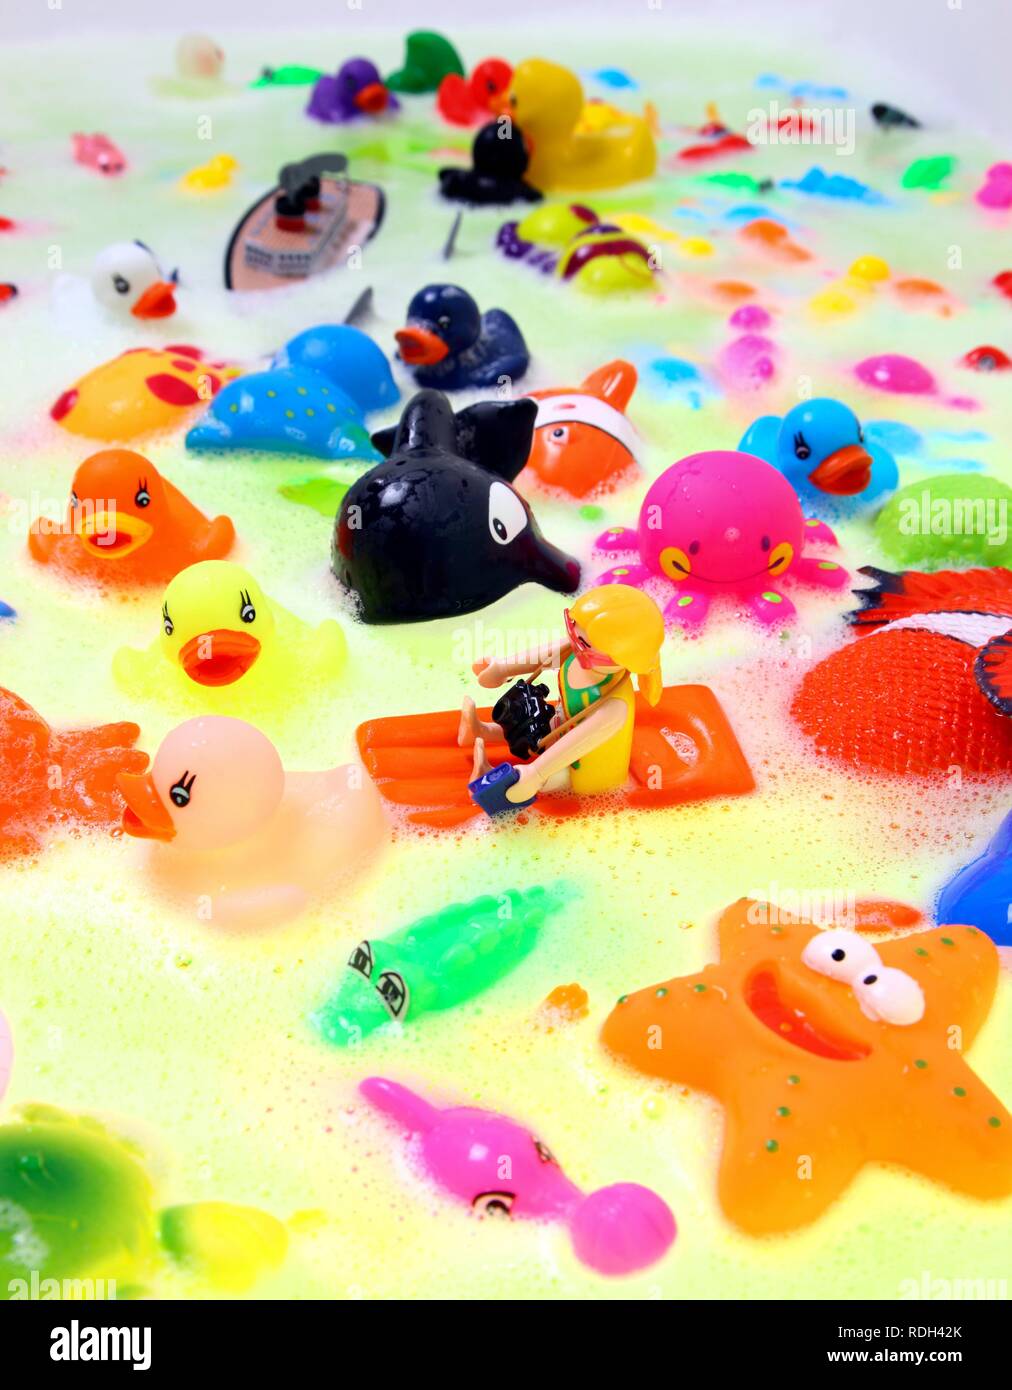 Divers jouets de l'eau colorée avec du bain moussant Banque D'Images